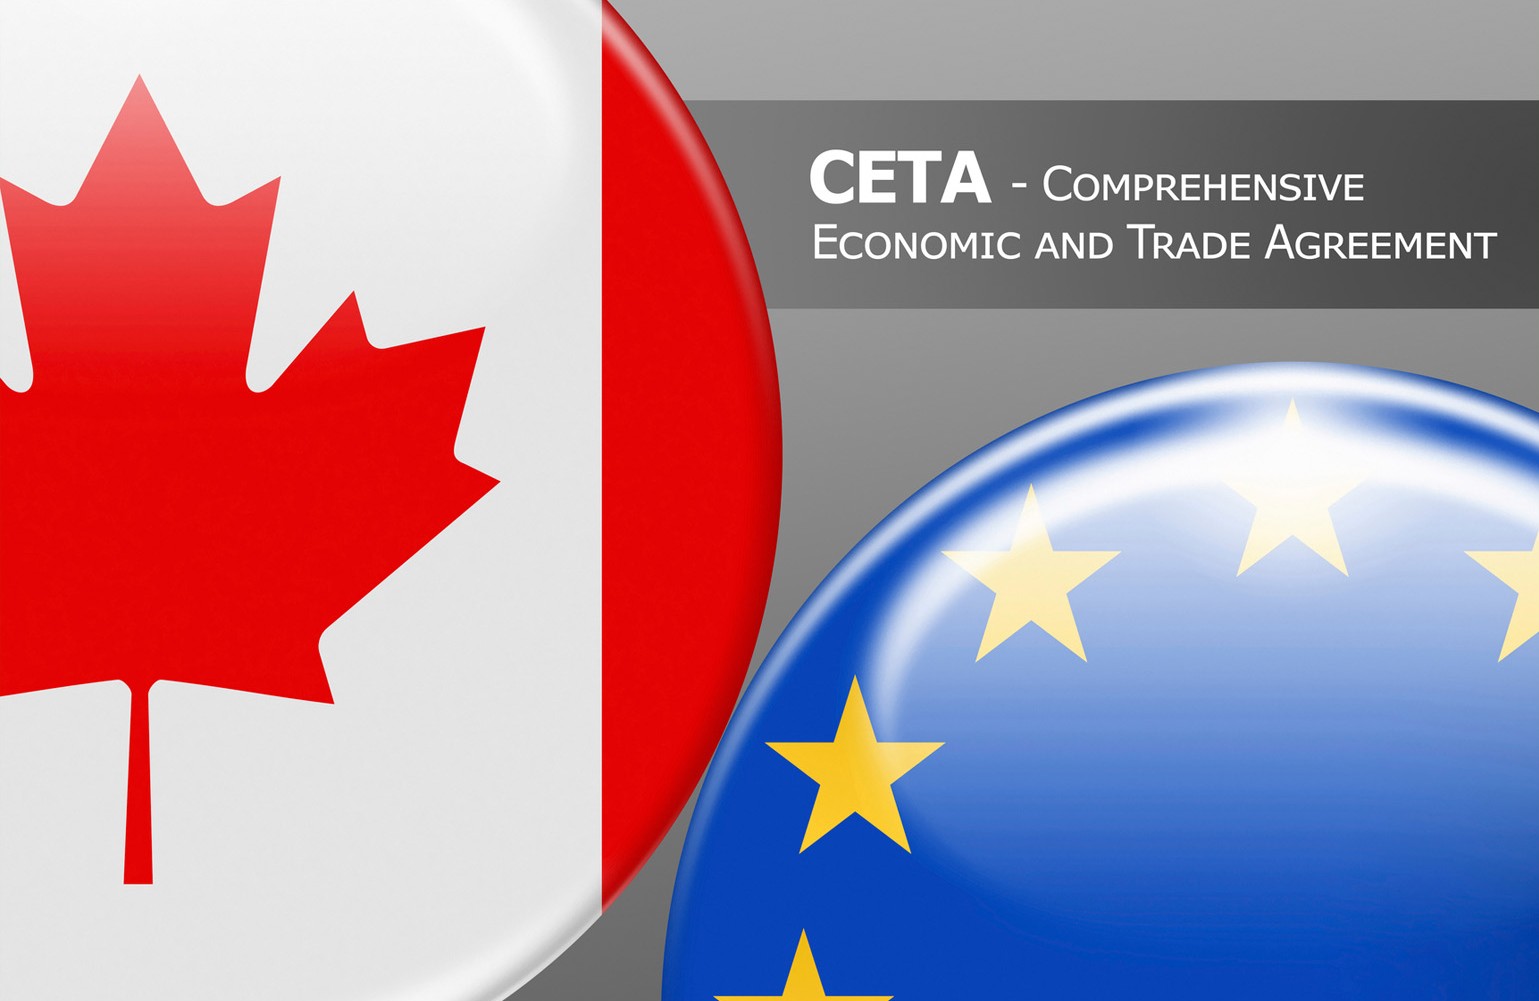 Ръководство за прилагане на Търговско-икономическото споразумение ЕС – Канада (CETA)